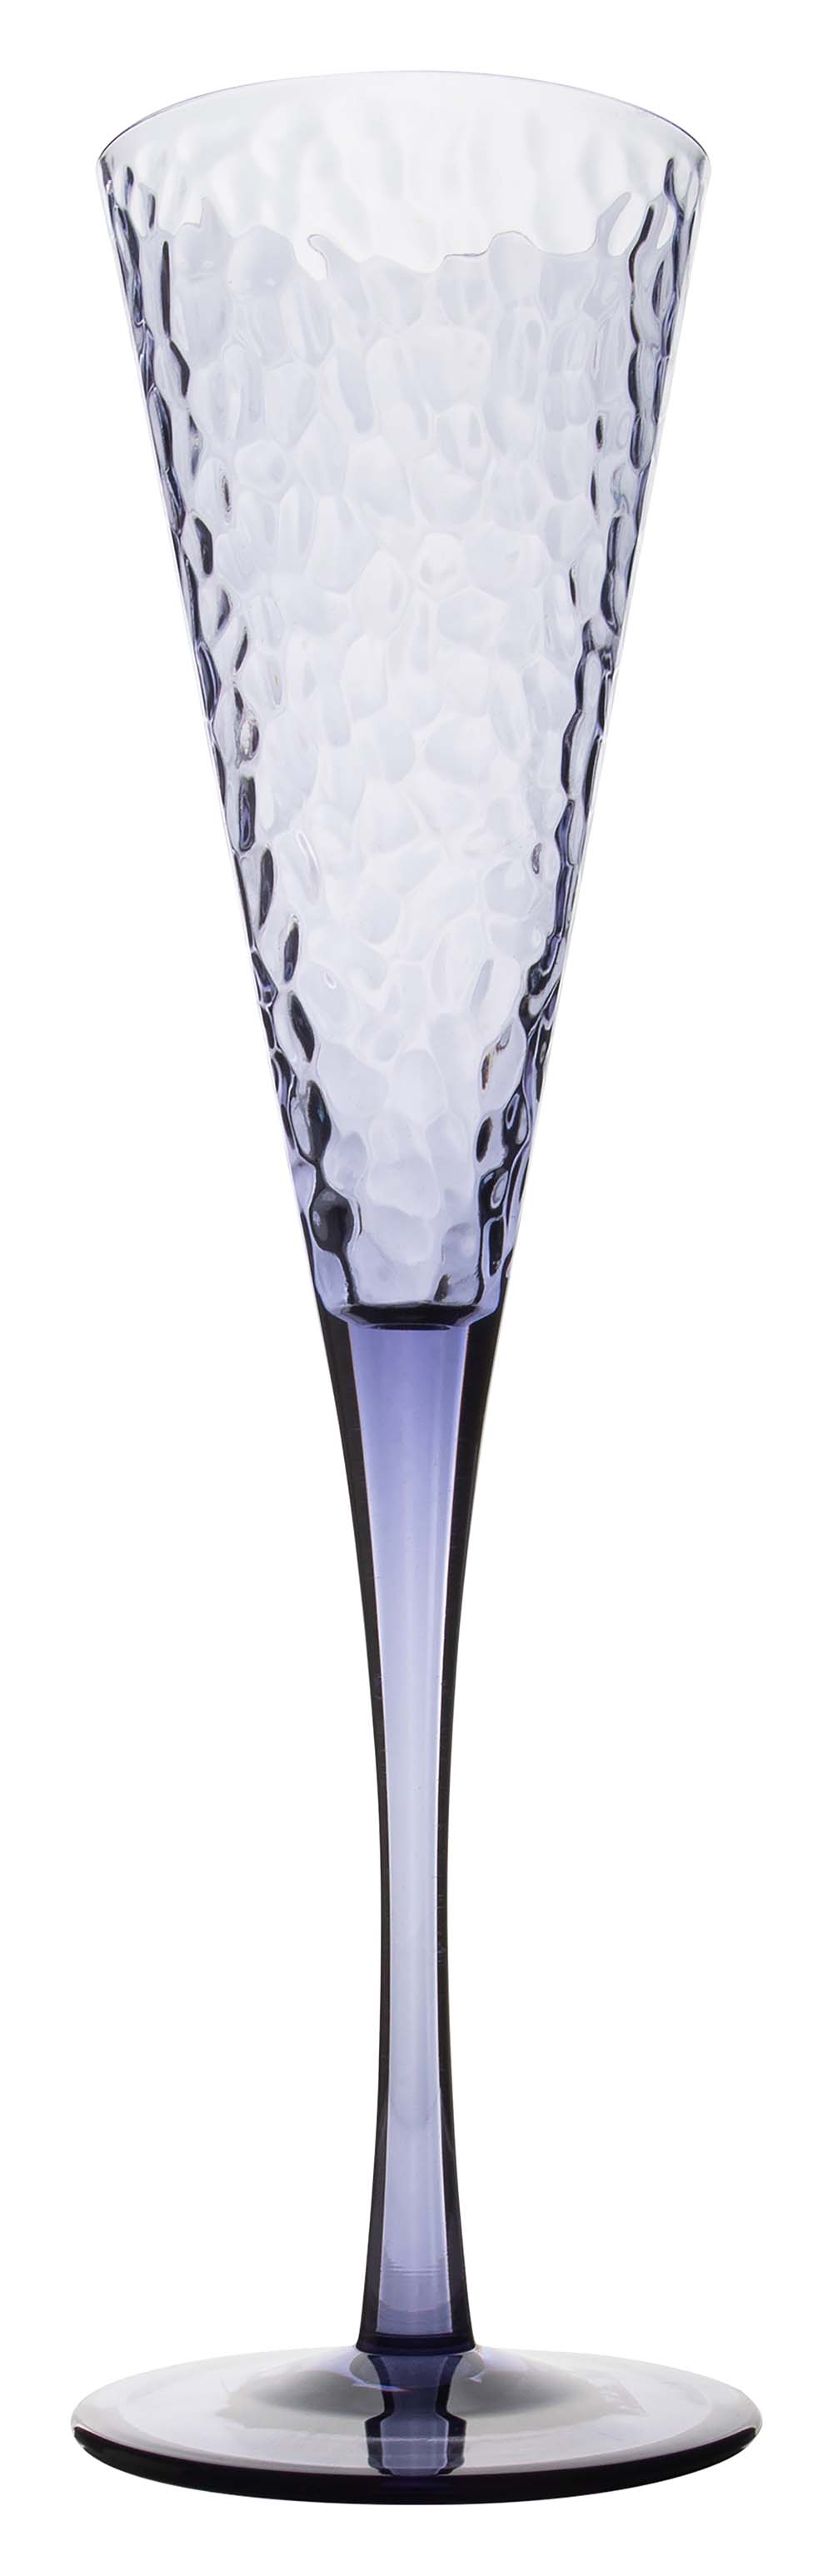 6967948 Een stijlvol blauw champagneglas uit de Stone line collectie. Vrijwel onbreekbaar door hoogwaardig polycarbonaat materiaal. Zeer gemakkelijk te reinigen en langdurig te gebruiken, wat het glas erg duurzaam maakt. Daarnaast is het champagneglas erg lichtgewicht en krasbestendig. Inhoud: 130 ml.